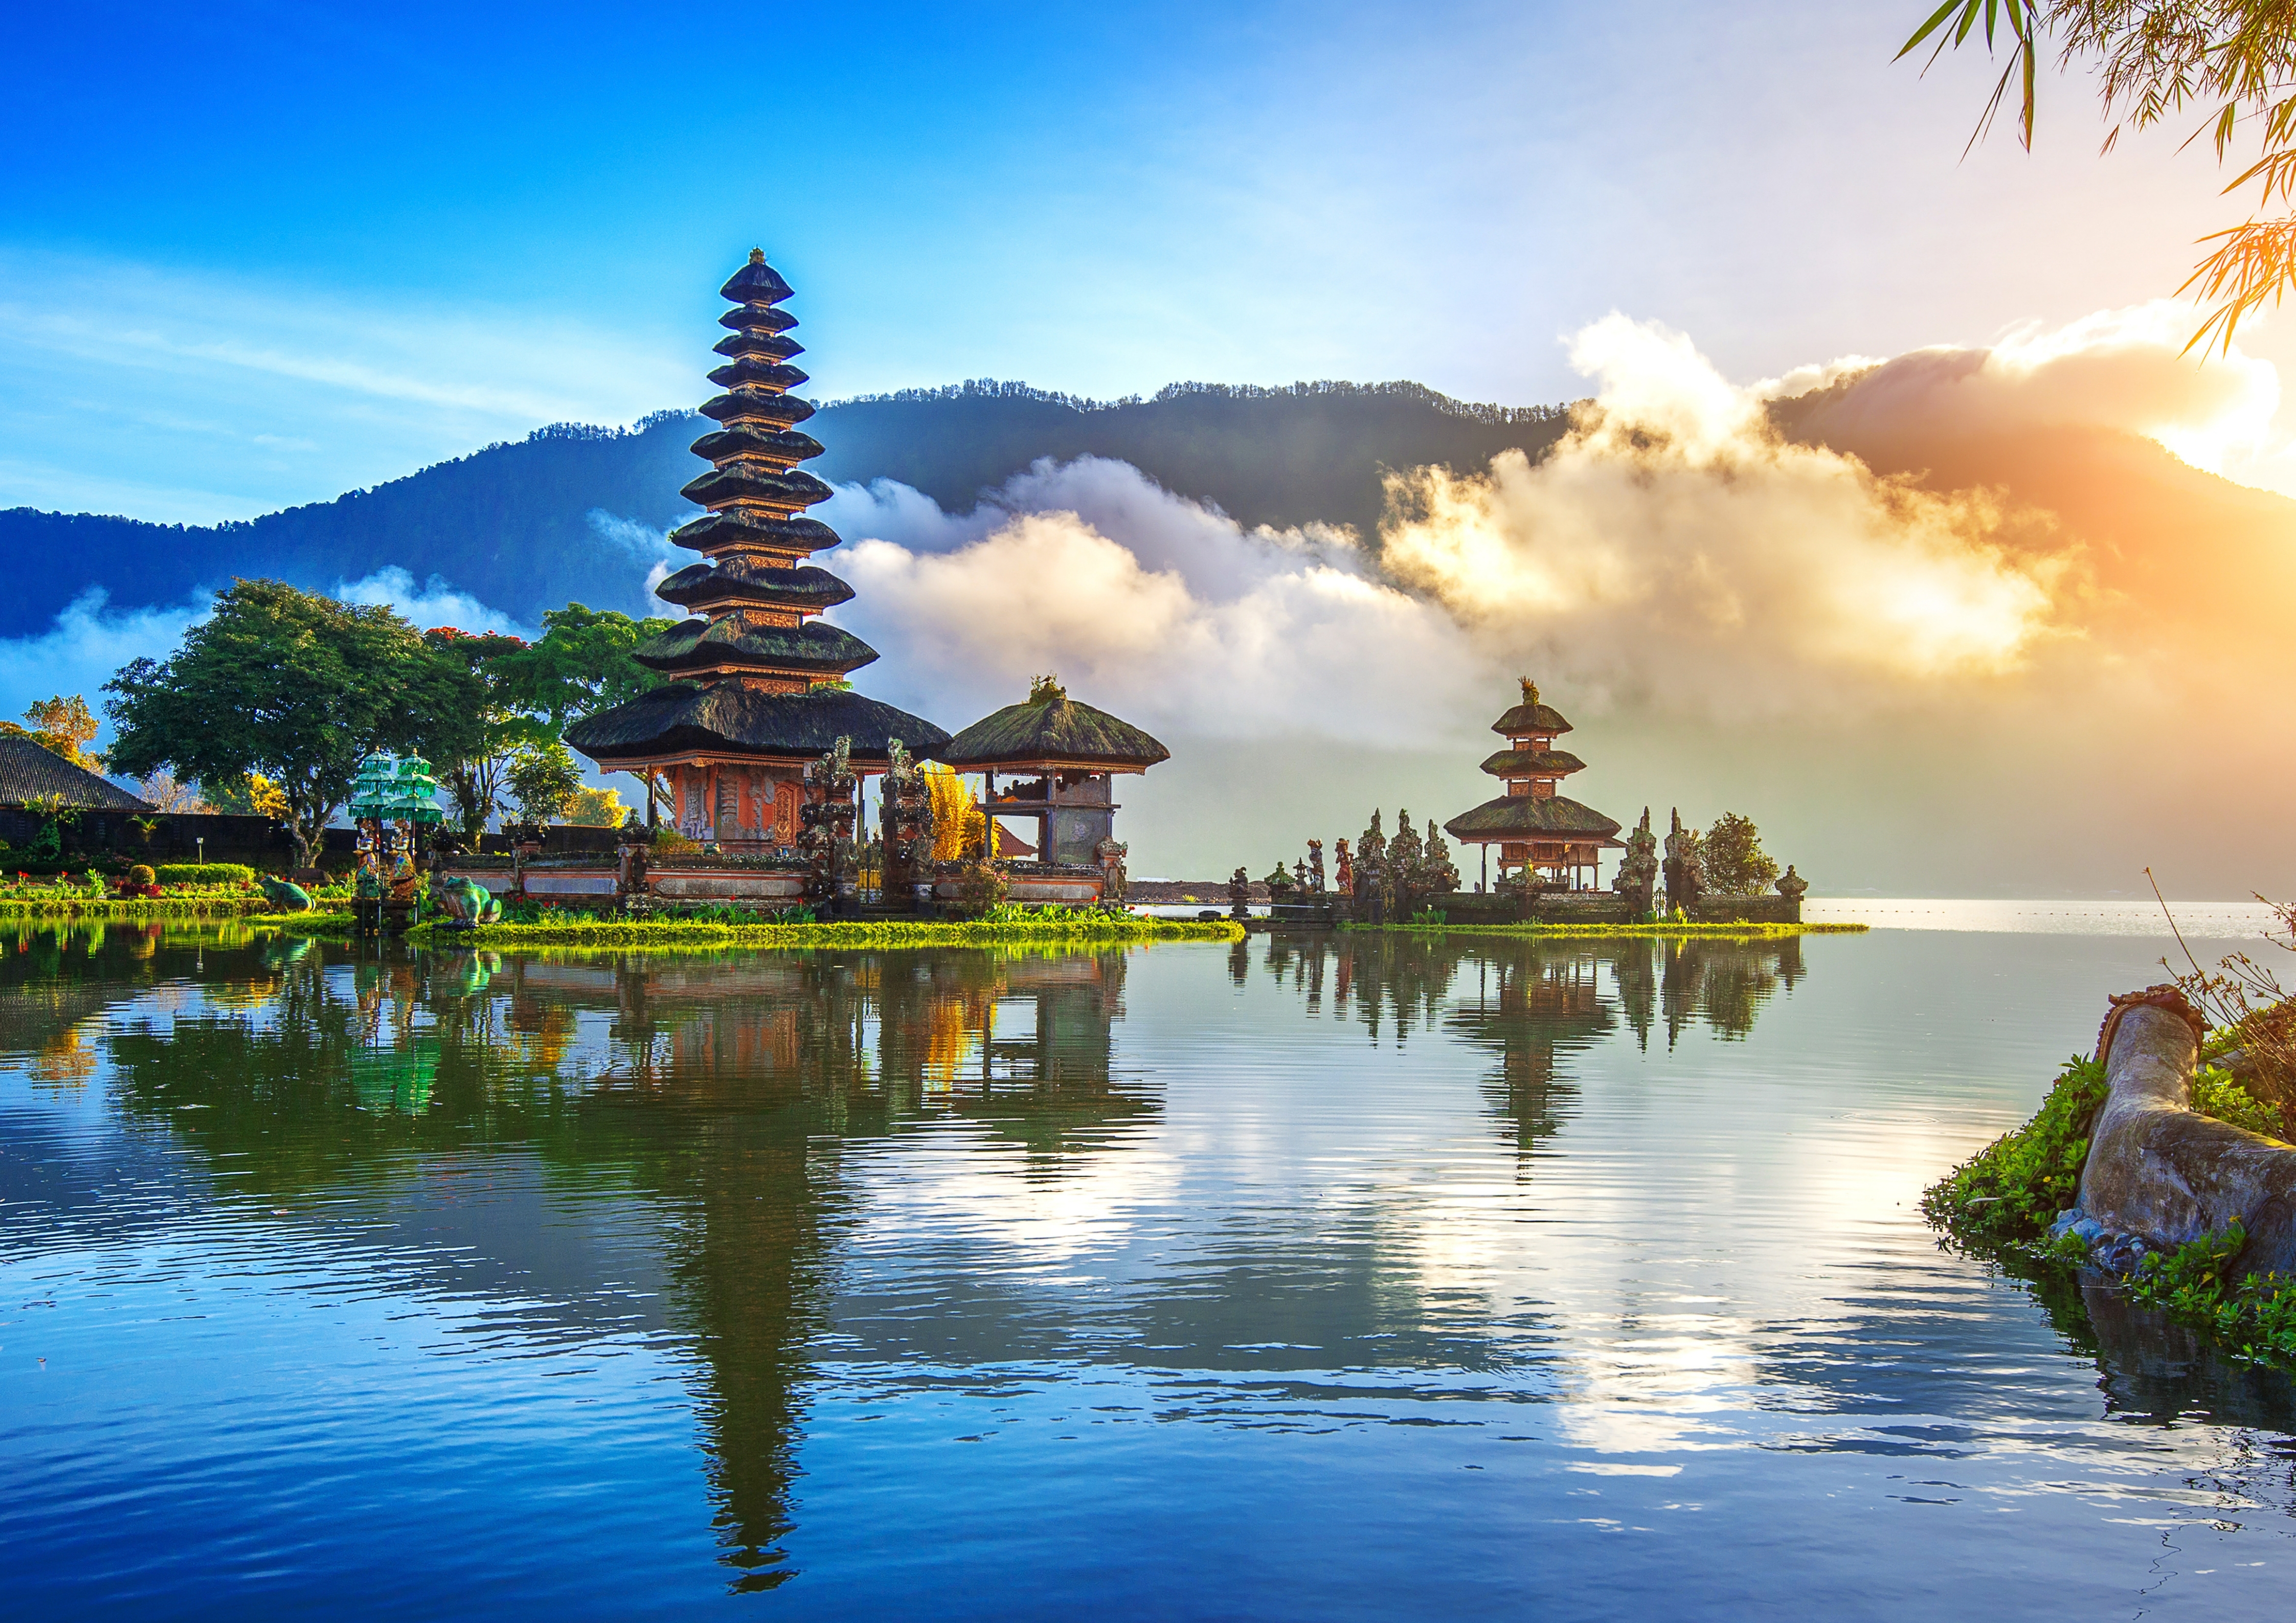 Let’s plan a trip to Bali: An Island Paradise